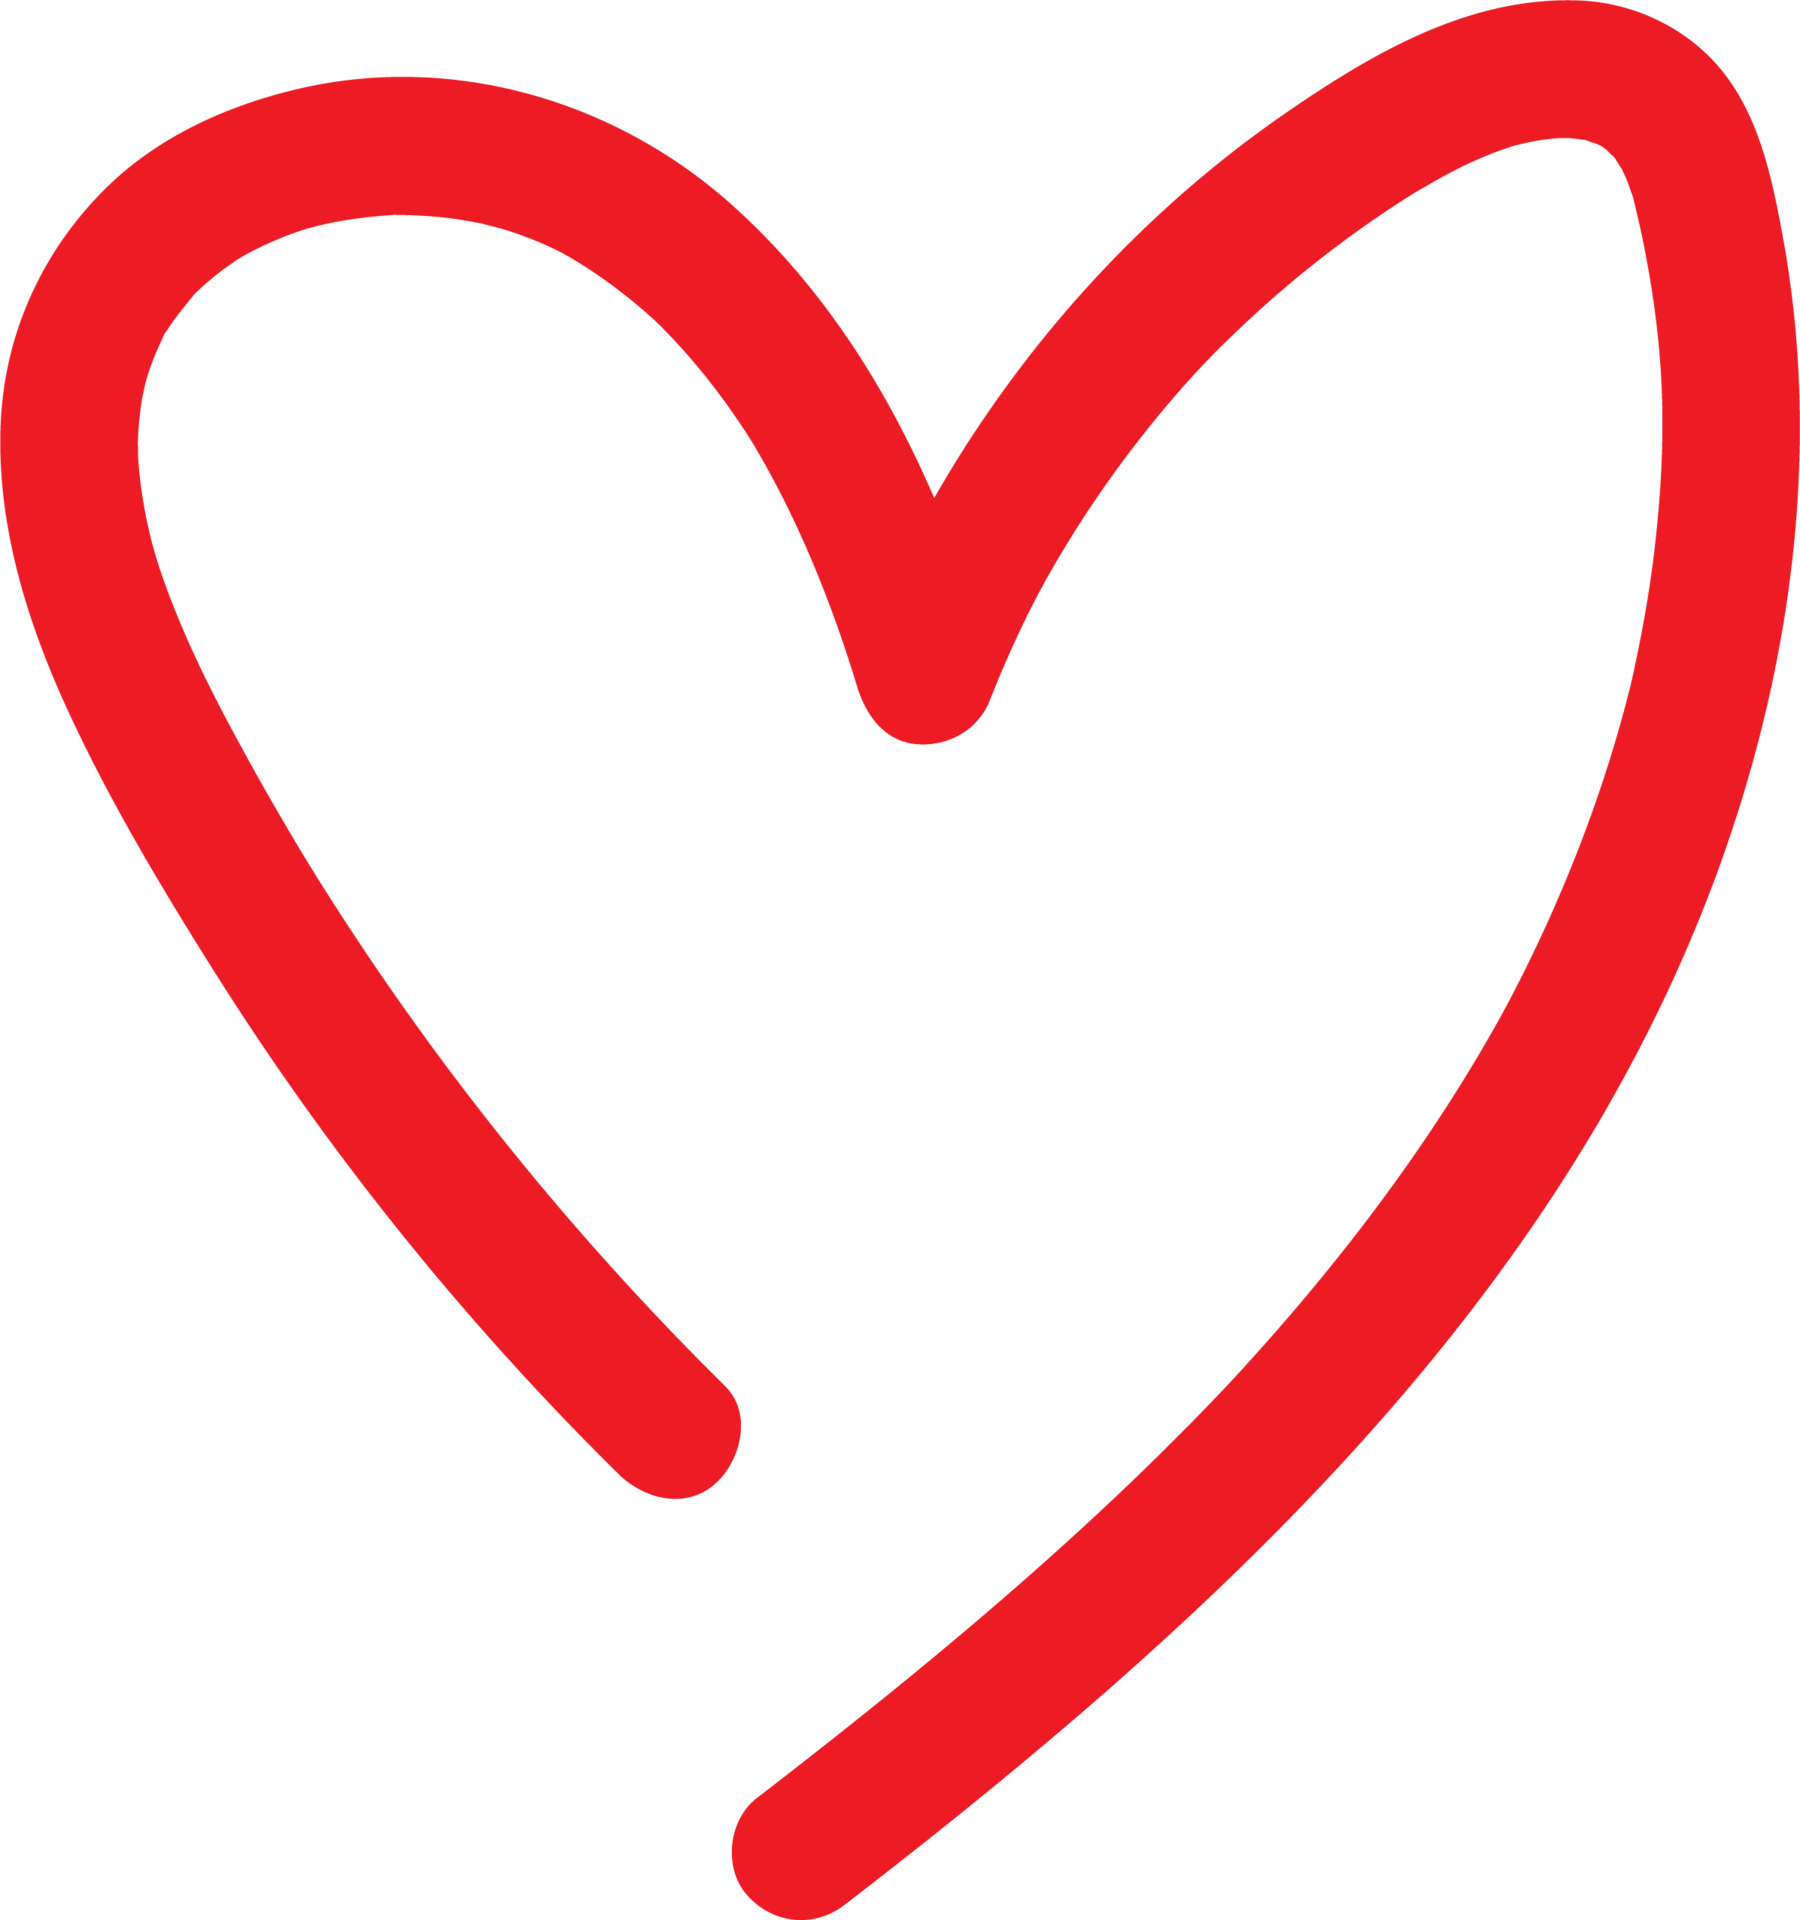 Tình yêu, trái tim, hình vẽ tay (Heart symbols isolated on a white background Red hand drawn): Trái tim và bàn tay vẽ bởi tình yêu sẽ khiến bạn cảm thấy mạnh mẽ và tươi trẻ đầy năng lượng. Bức ảnh này sẽ khiến bạn suy nghĩ đến tình yêu sâu đậm và tình cảm chân thành nhất mỗi khi nhìn vào nó. Hãy bấm vào đây để thưởng thức bức ảnh tinh tế và đầy ý nghĩa này!